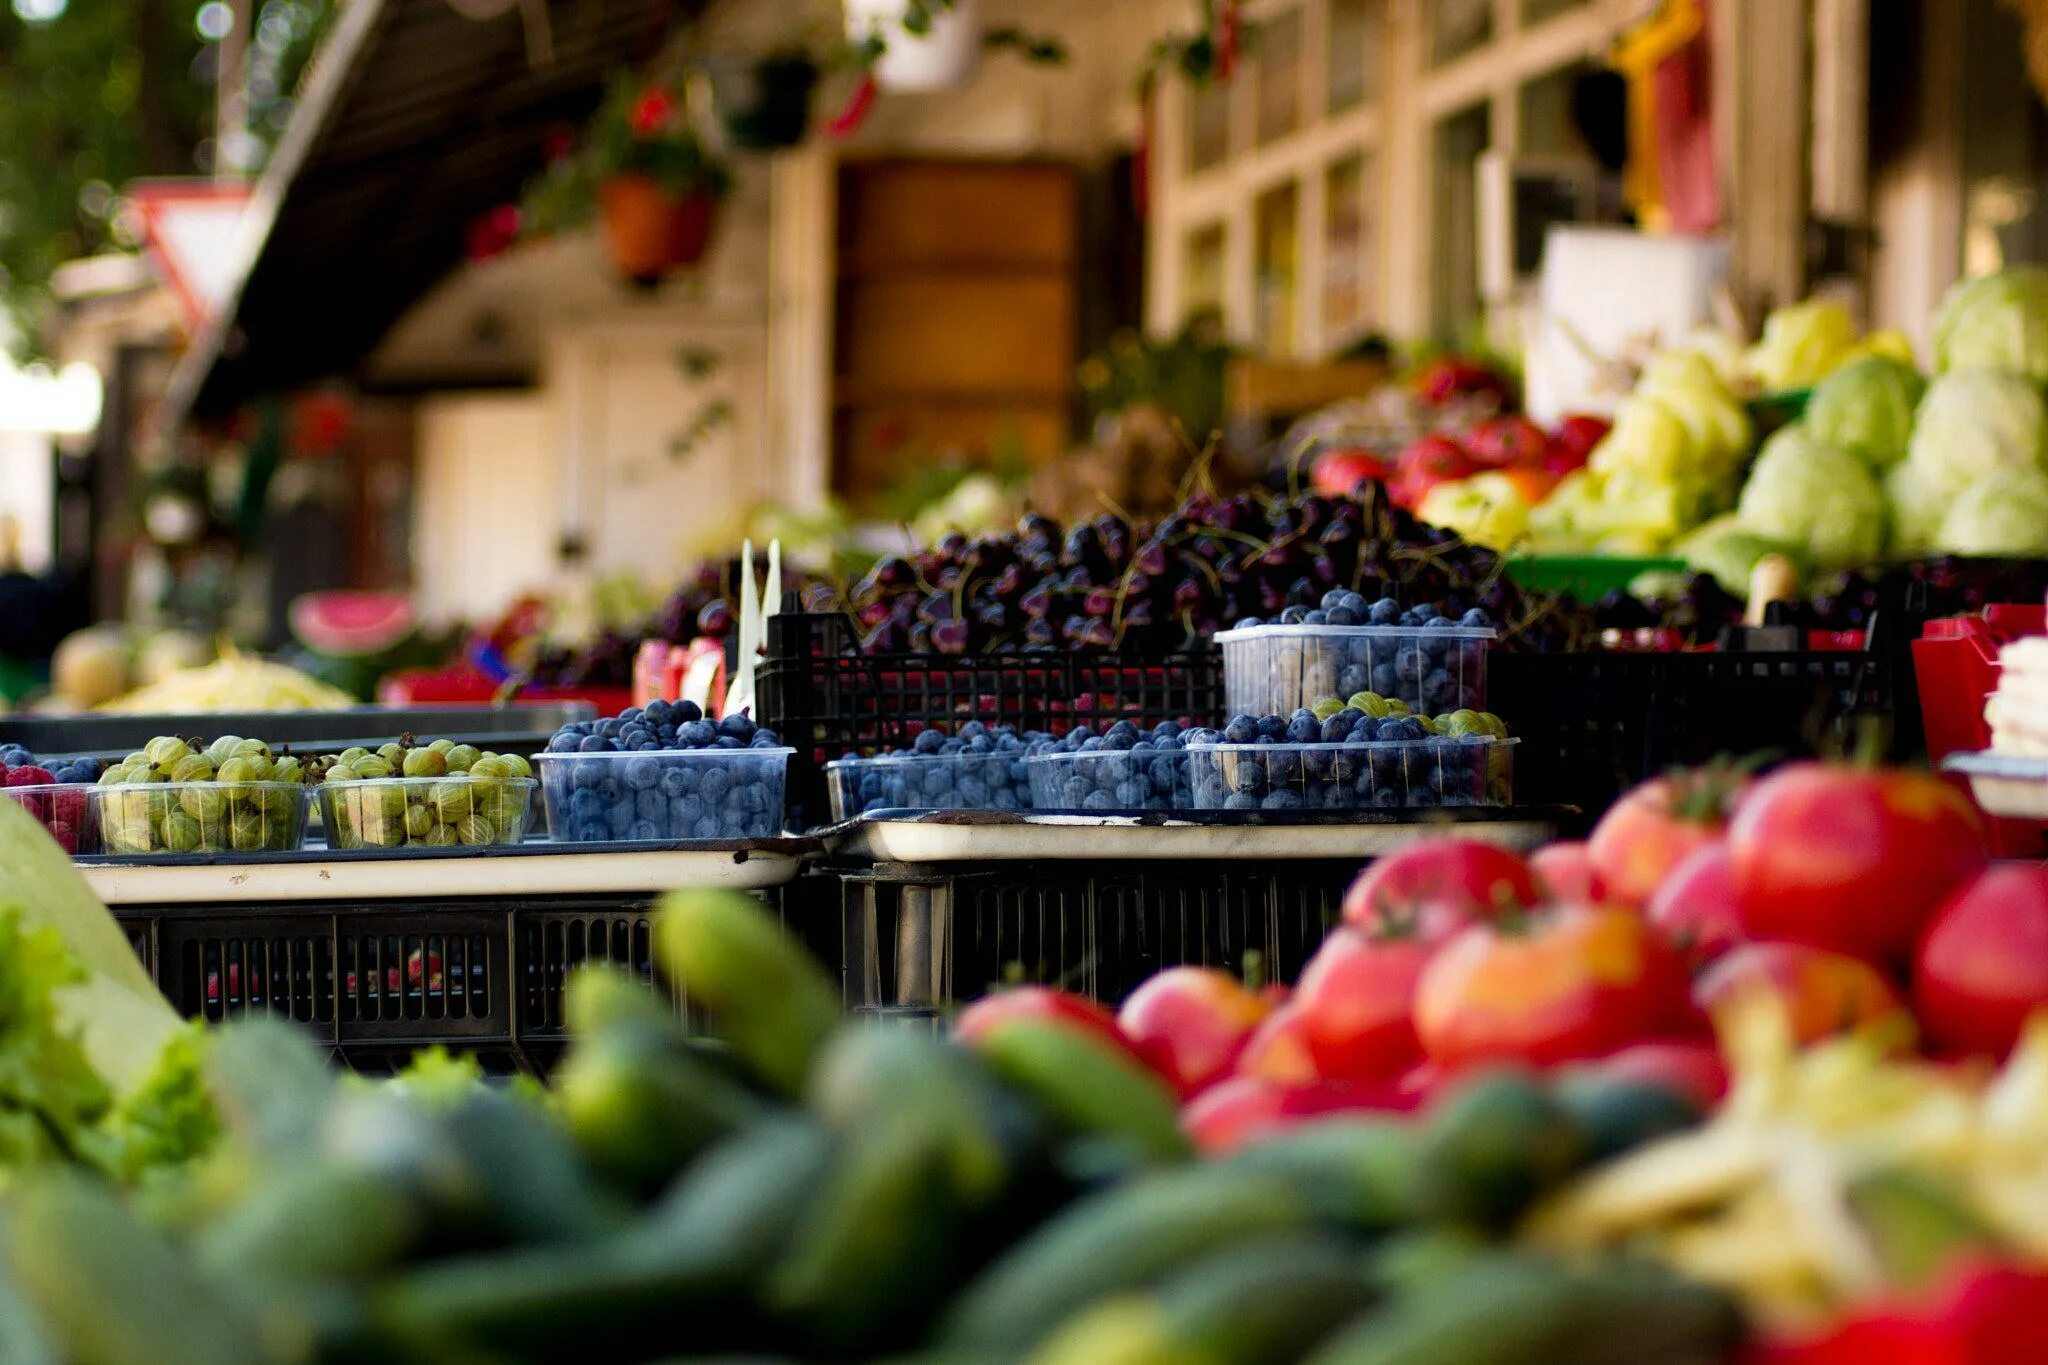 Овощи на рынке. Овощи и фрукты на рынке. Овощной рынок. Прилавок с овощами и фруктами на рынке.